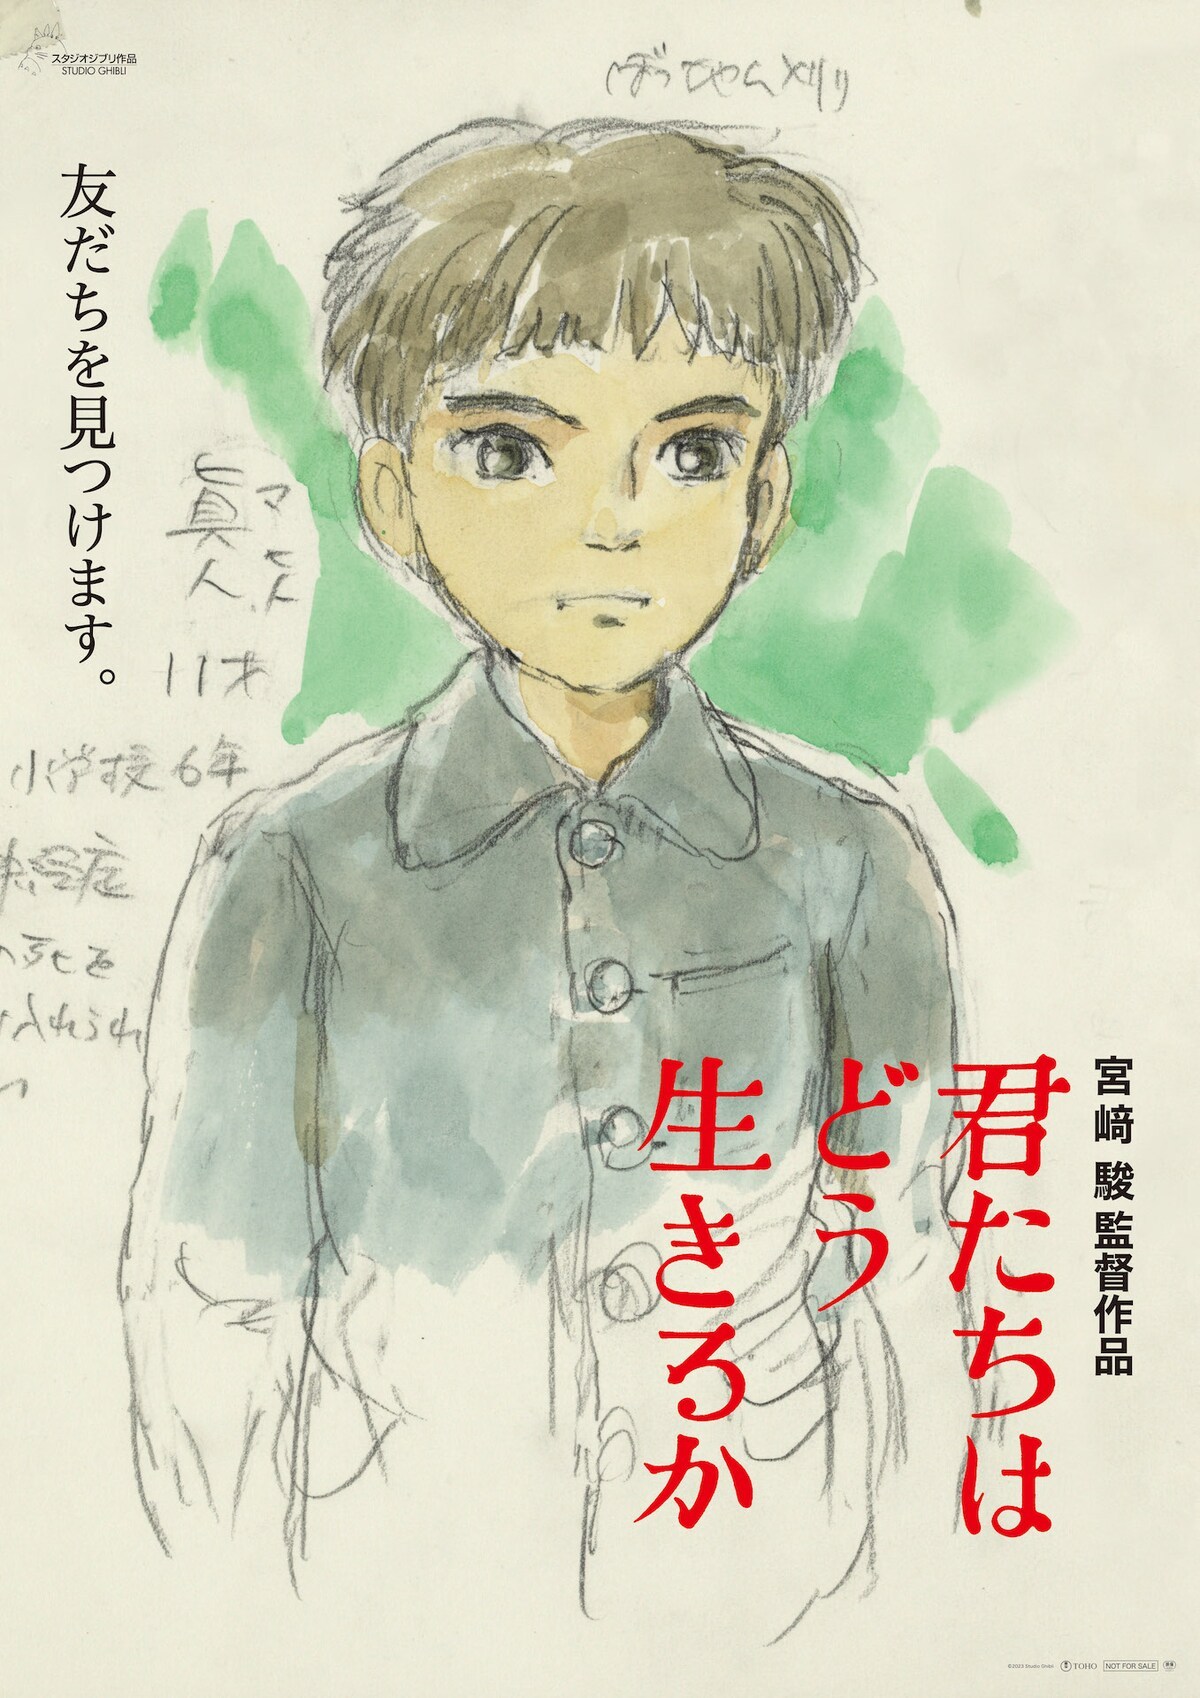 宫崎骏原作、导演新作《你想活出怎样的人生》（又名：苍鹭与少年）日本公开第二弹海报，由宫崎骏绘制的男主角牧真人最初设计。-二次元COS分享次元吧